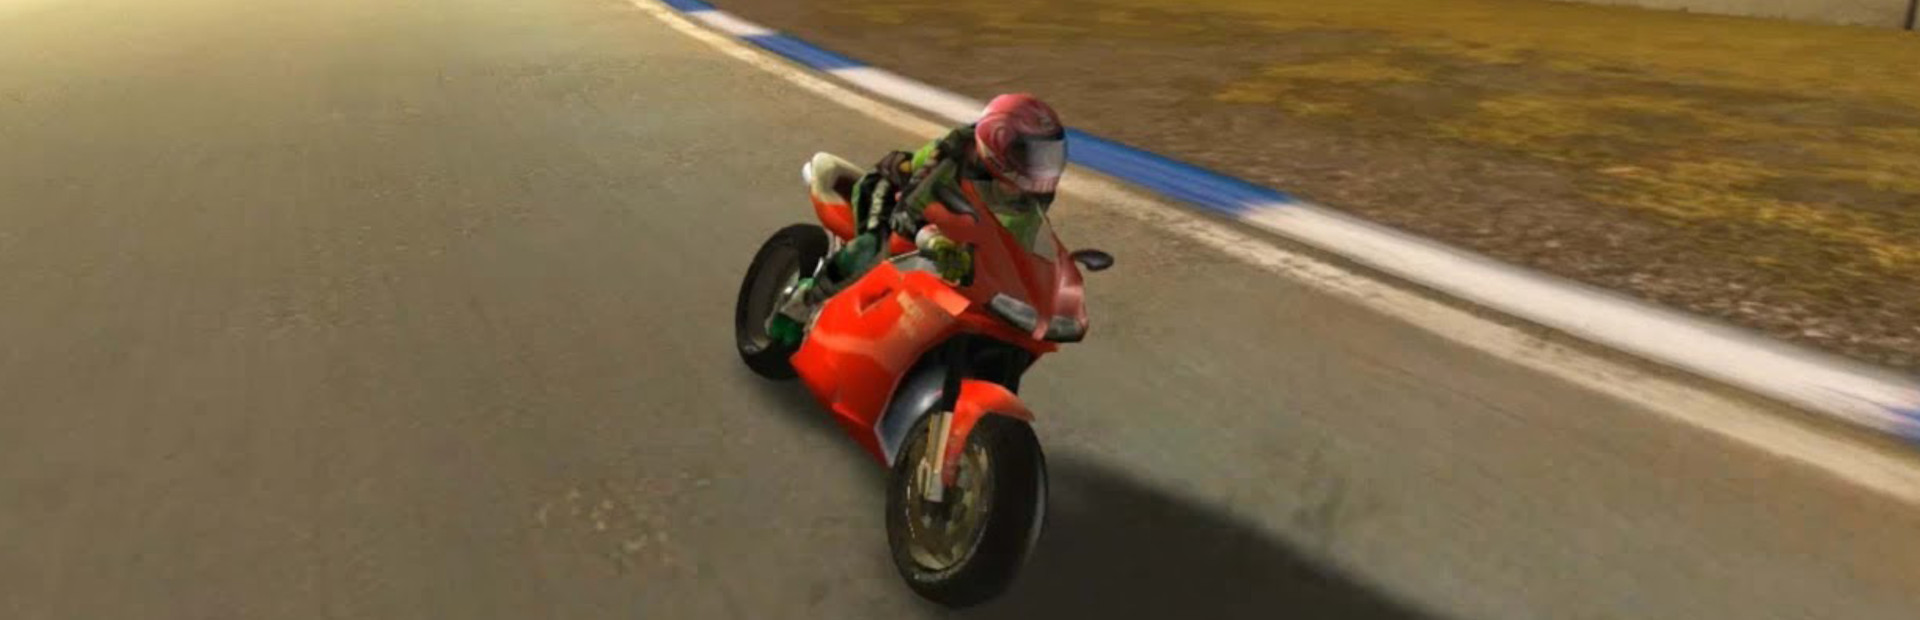 Ducati World Championship cover image